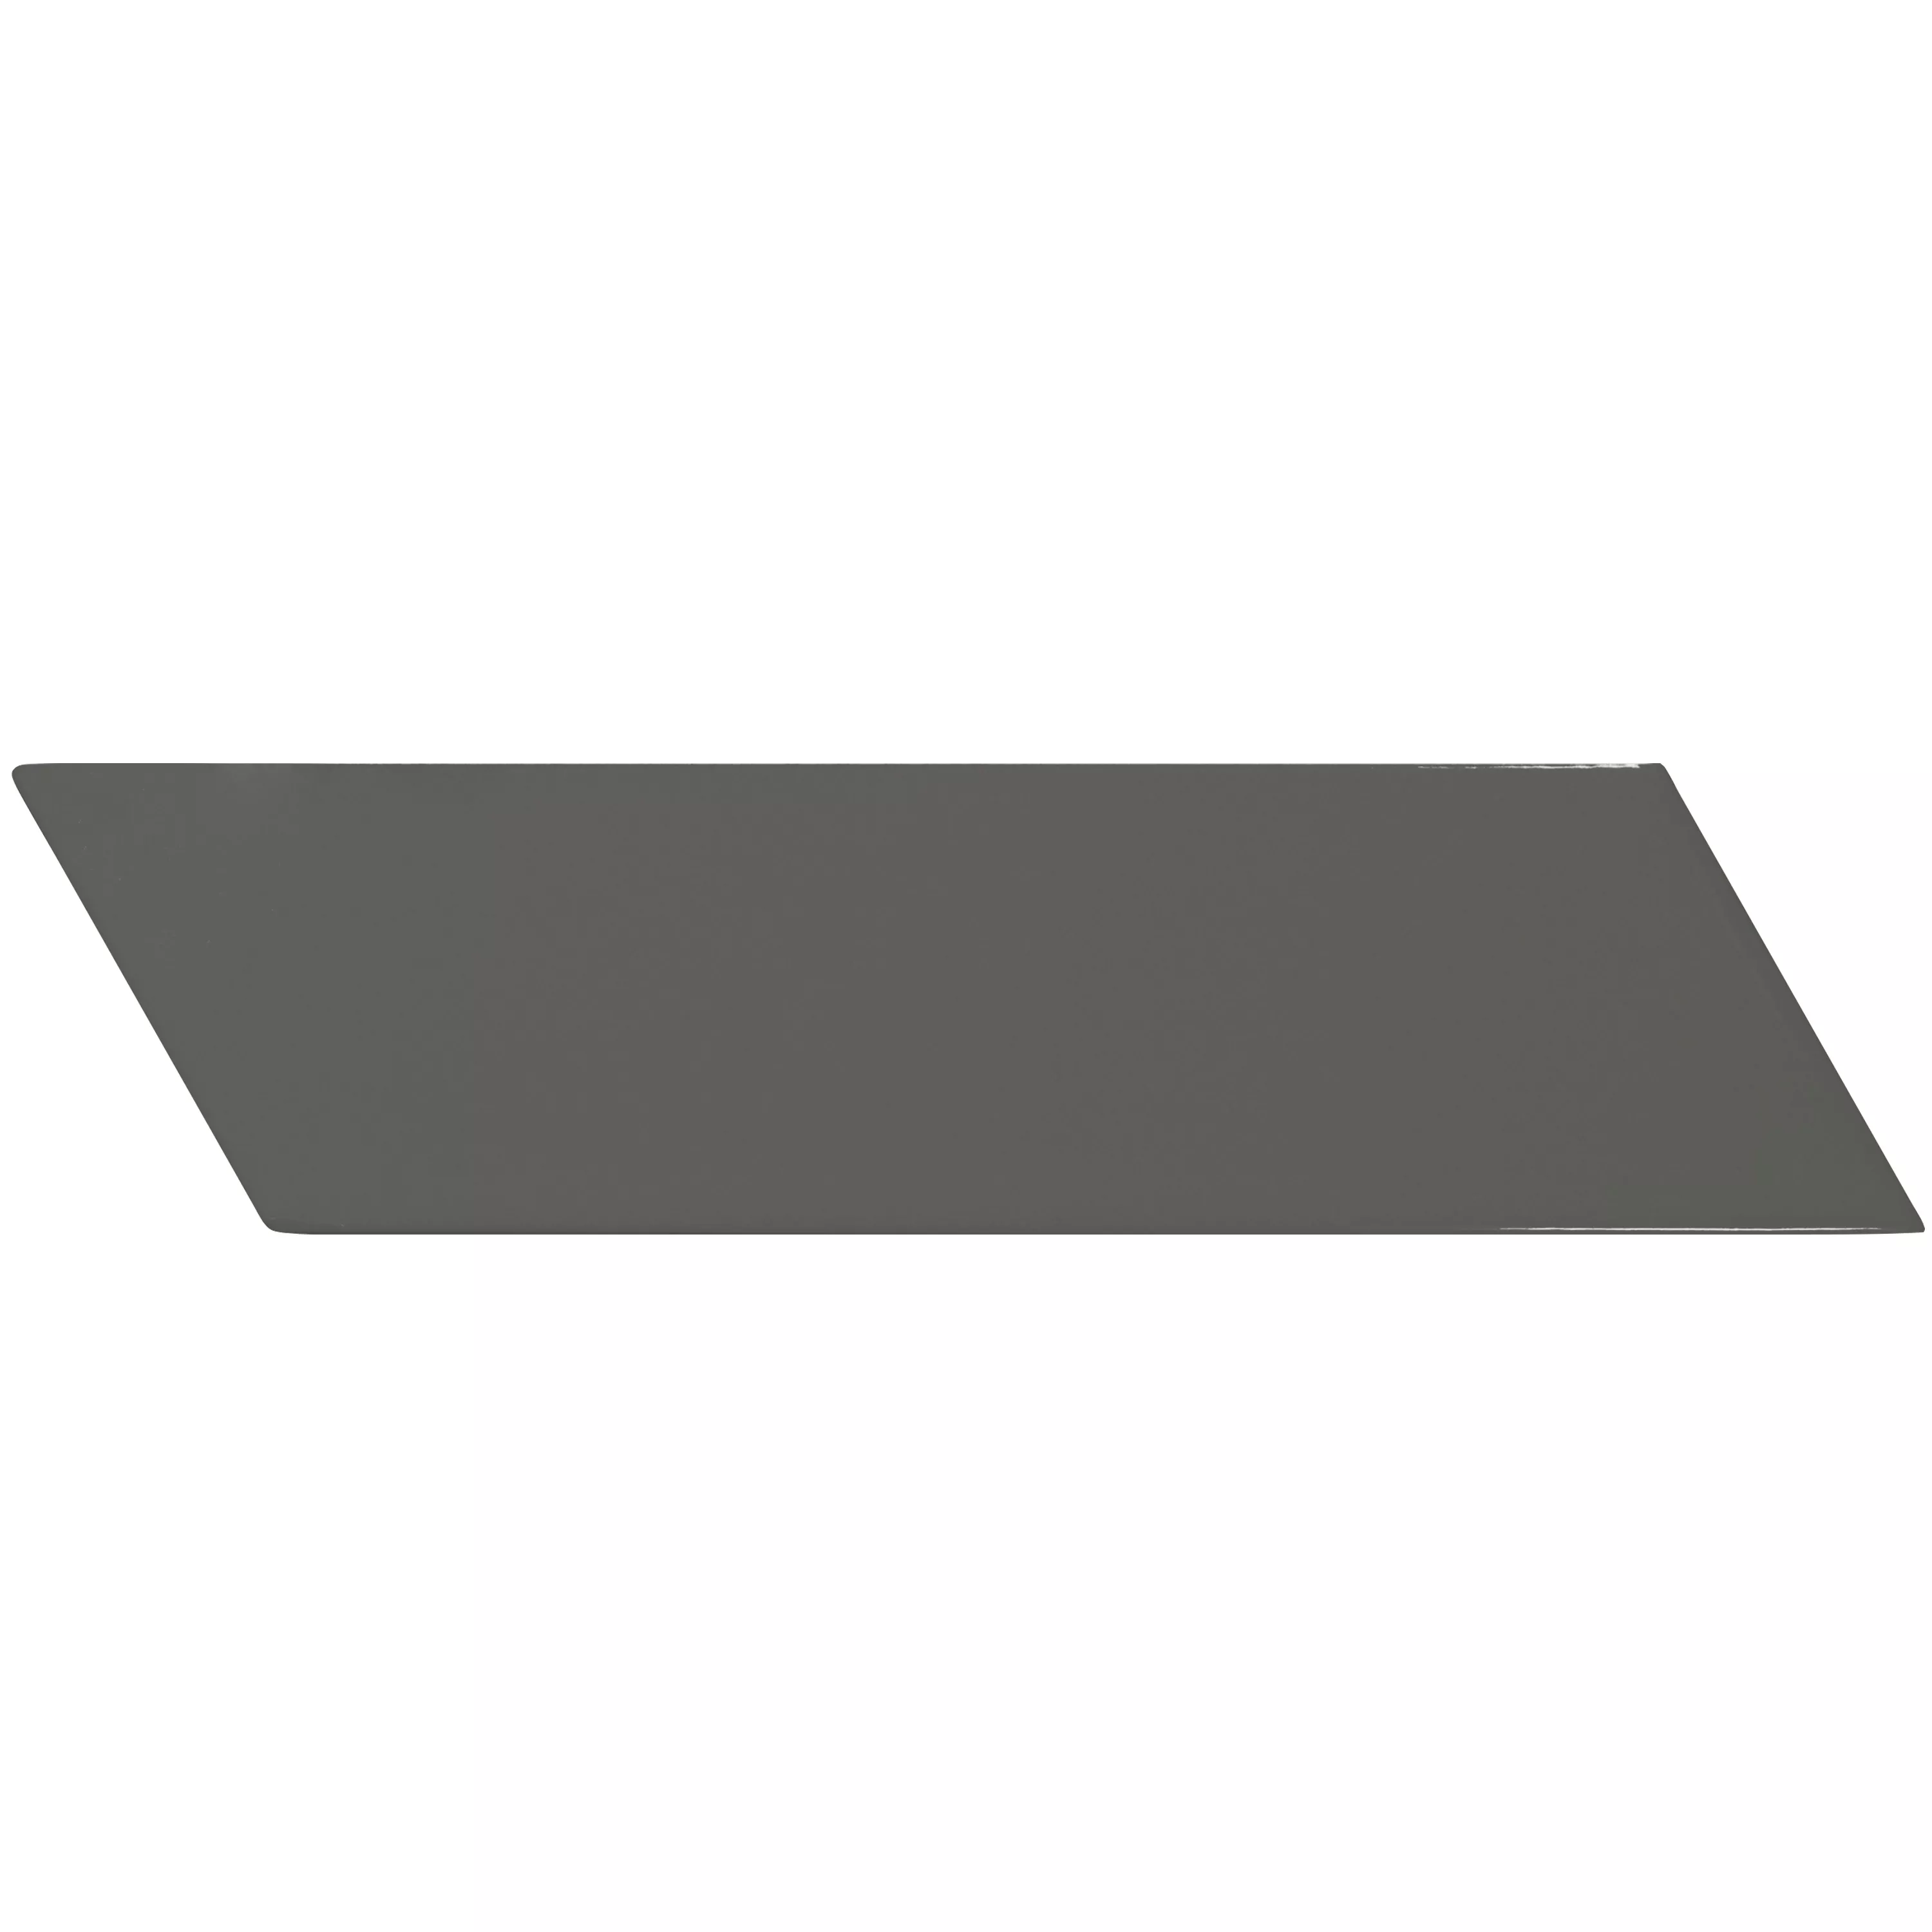 Padrão Azulejos Silex 18,6x5,2cm Cinza Escuro Aslant Direita